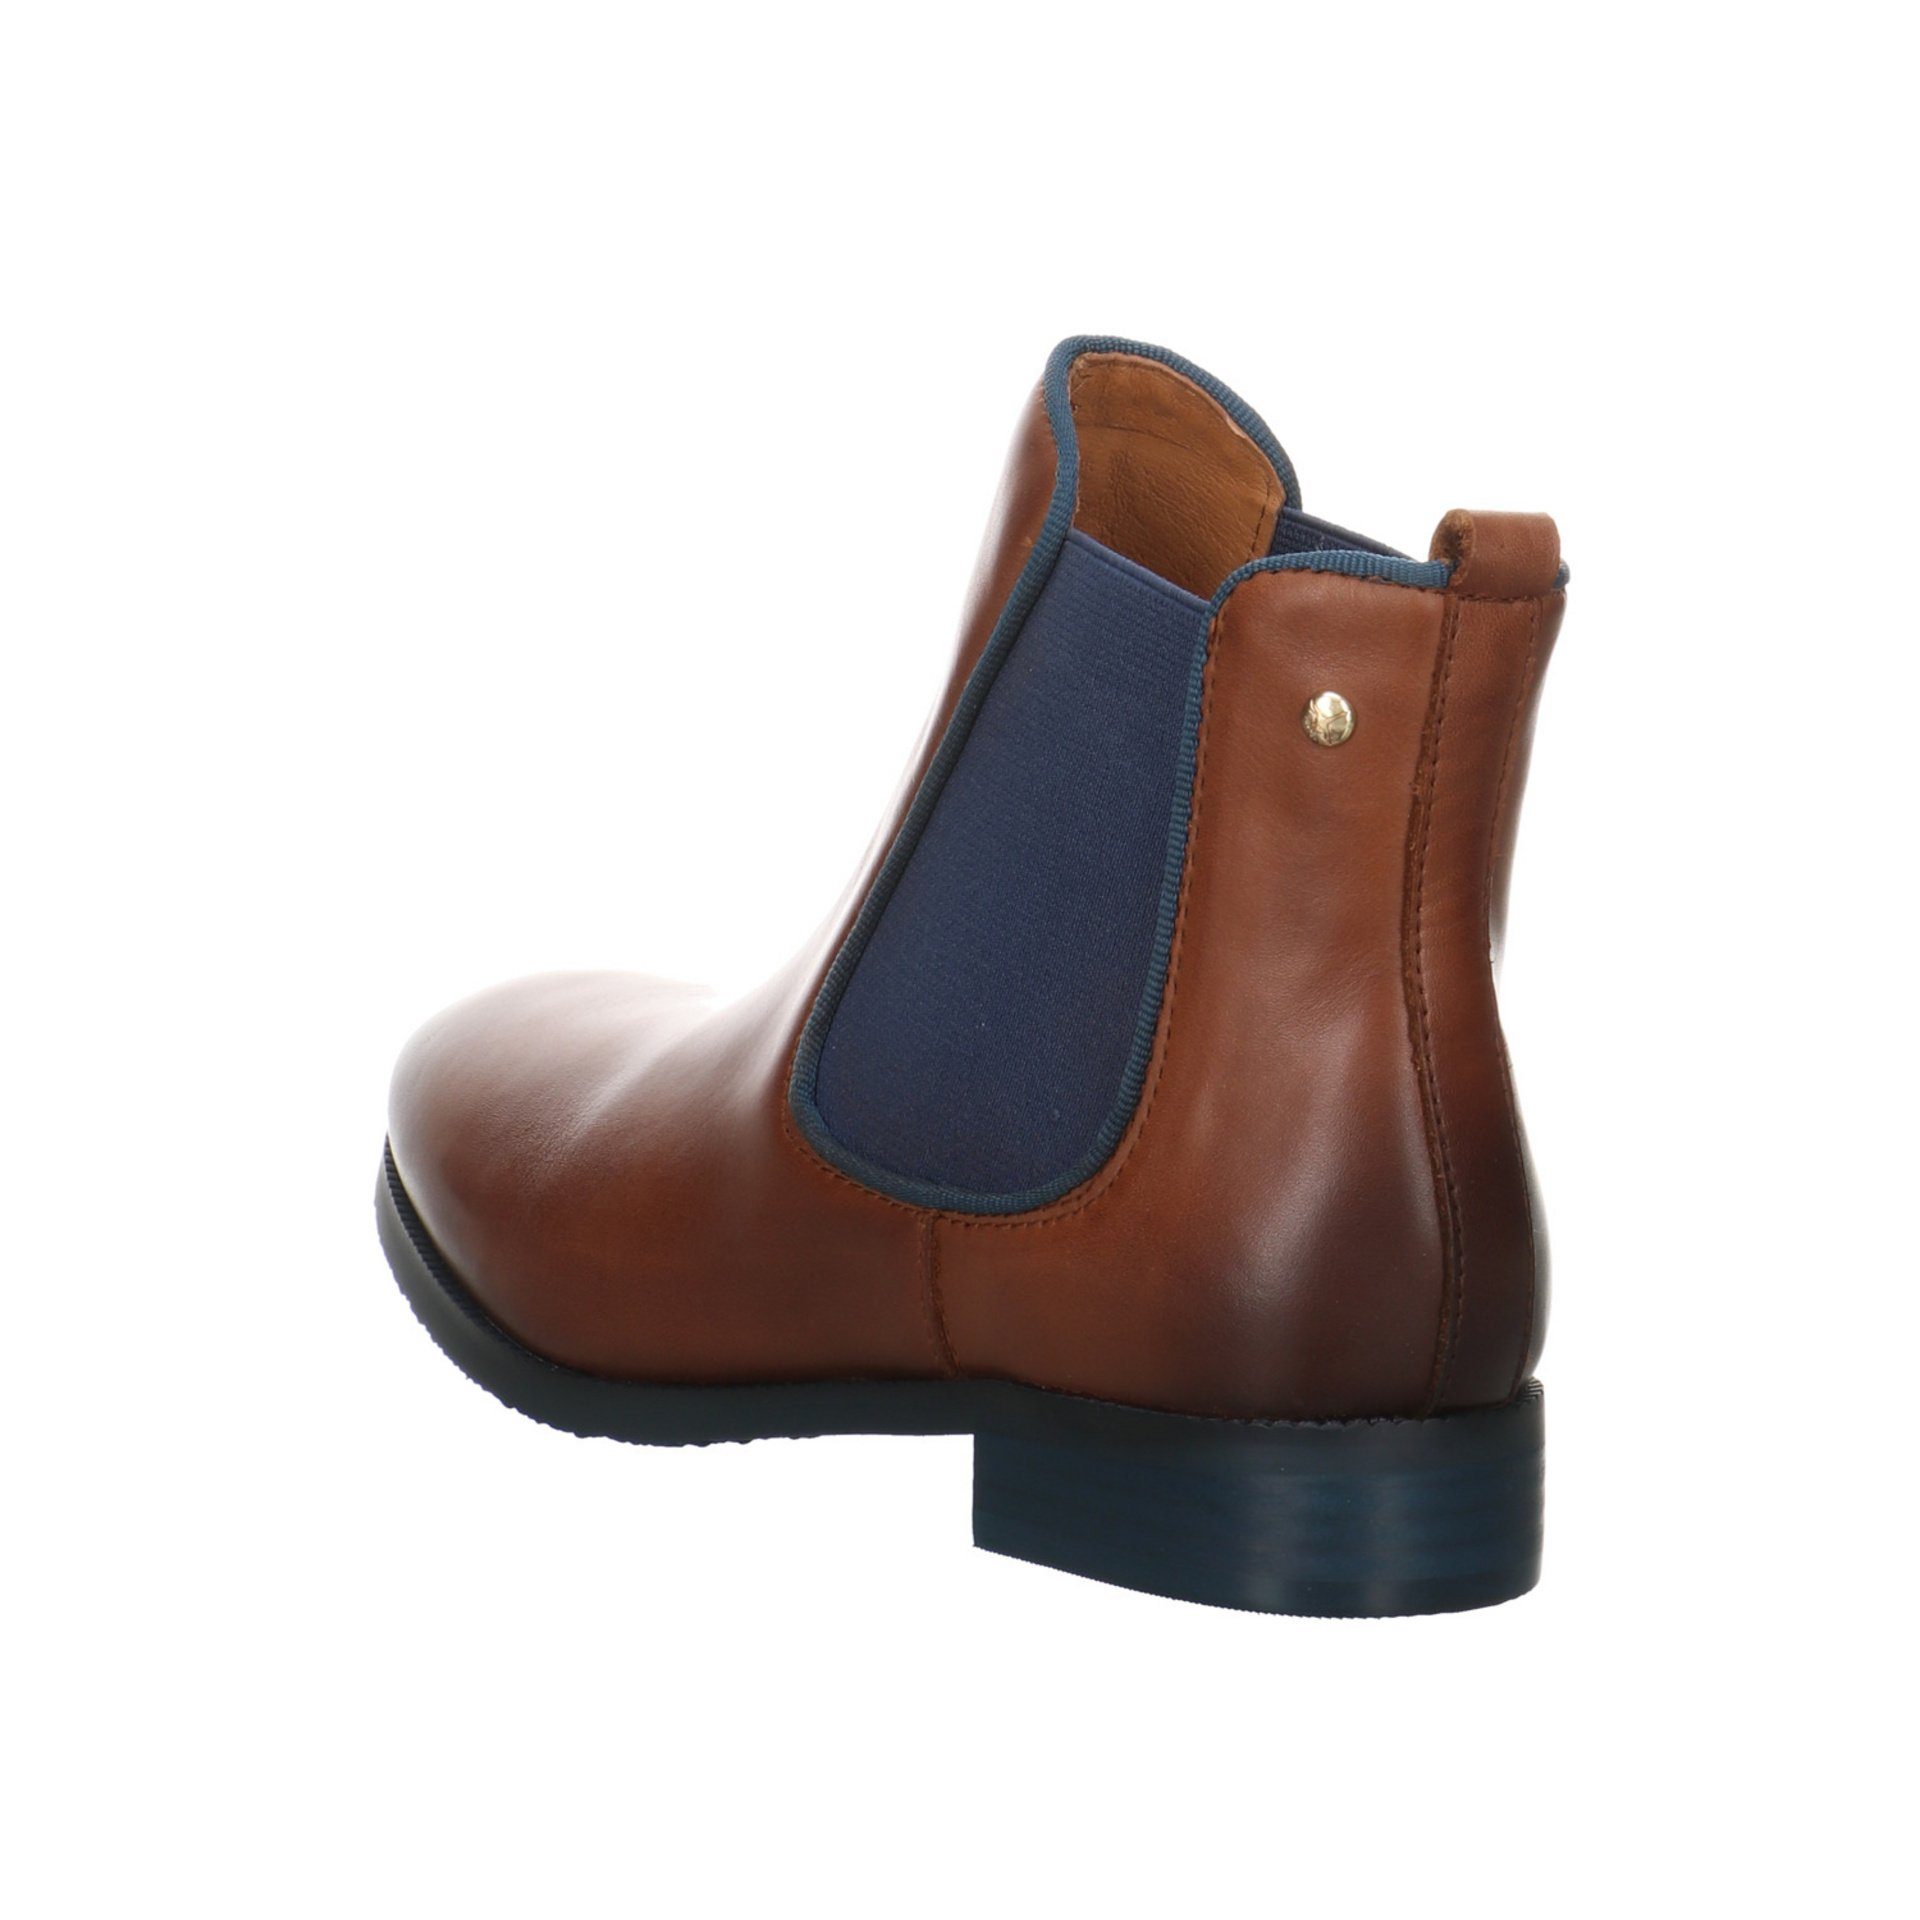 Boots Schuhe Stiefeletten Damen Royal Leder-/Textilkombination Stiefelette Chelsea Braun PIKOLINOS